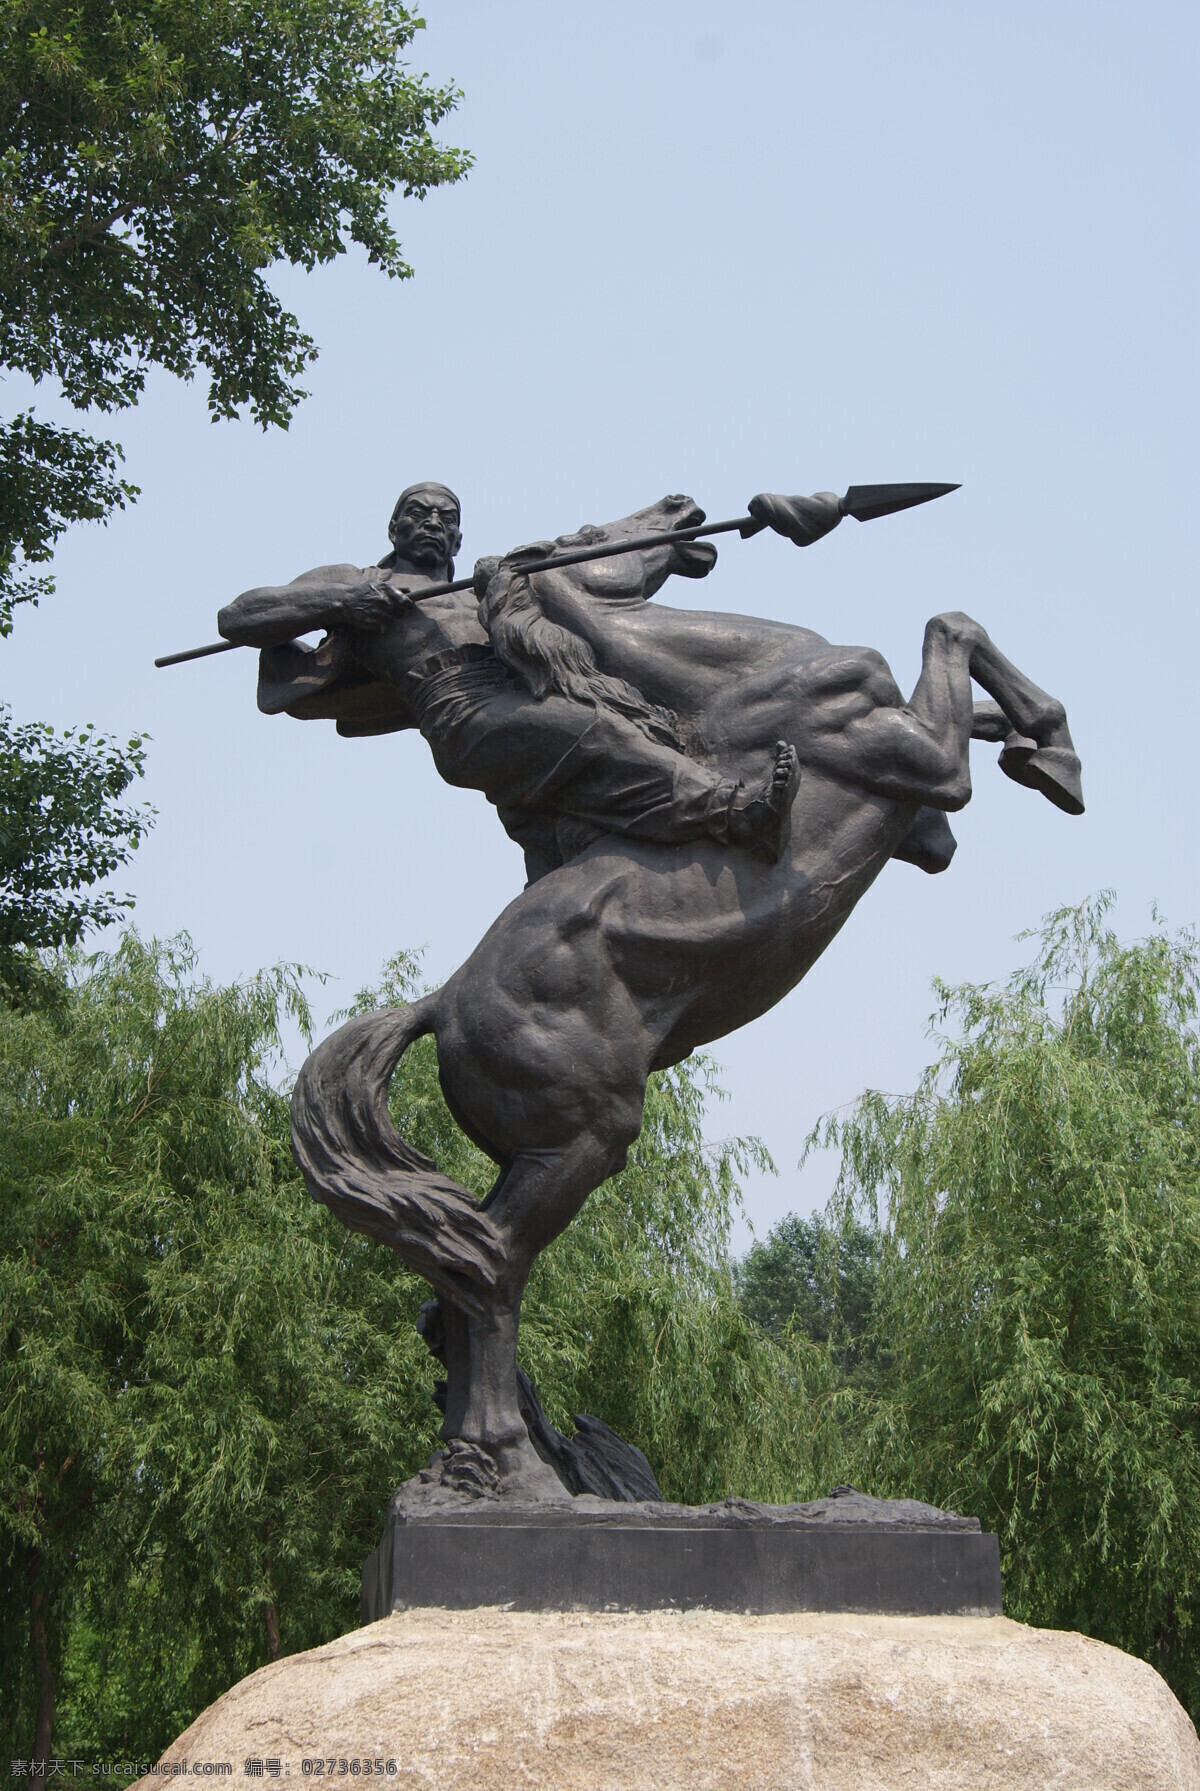 雕塑 金戈铁马 长春 世界 公园 雕塑公园 艺术作品 金属雕塑 英雄 骏马 长矛 建筑园林